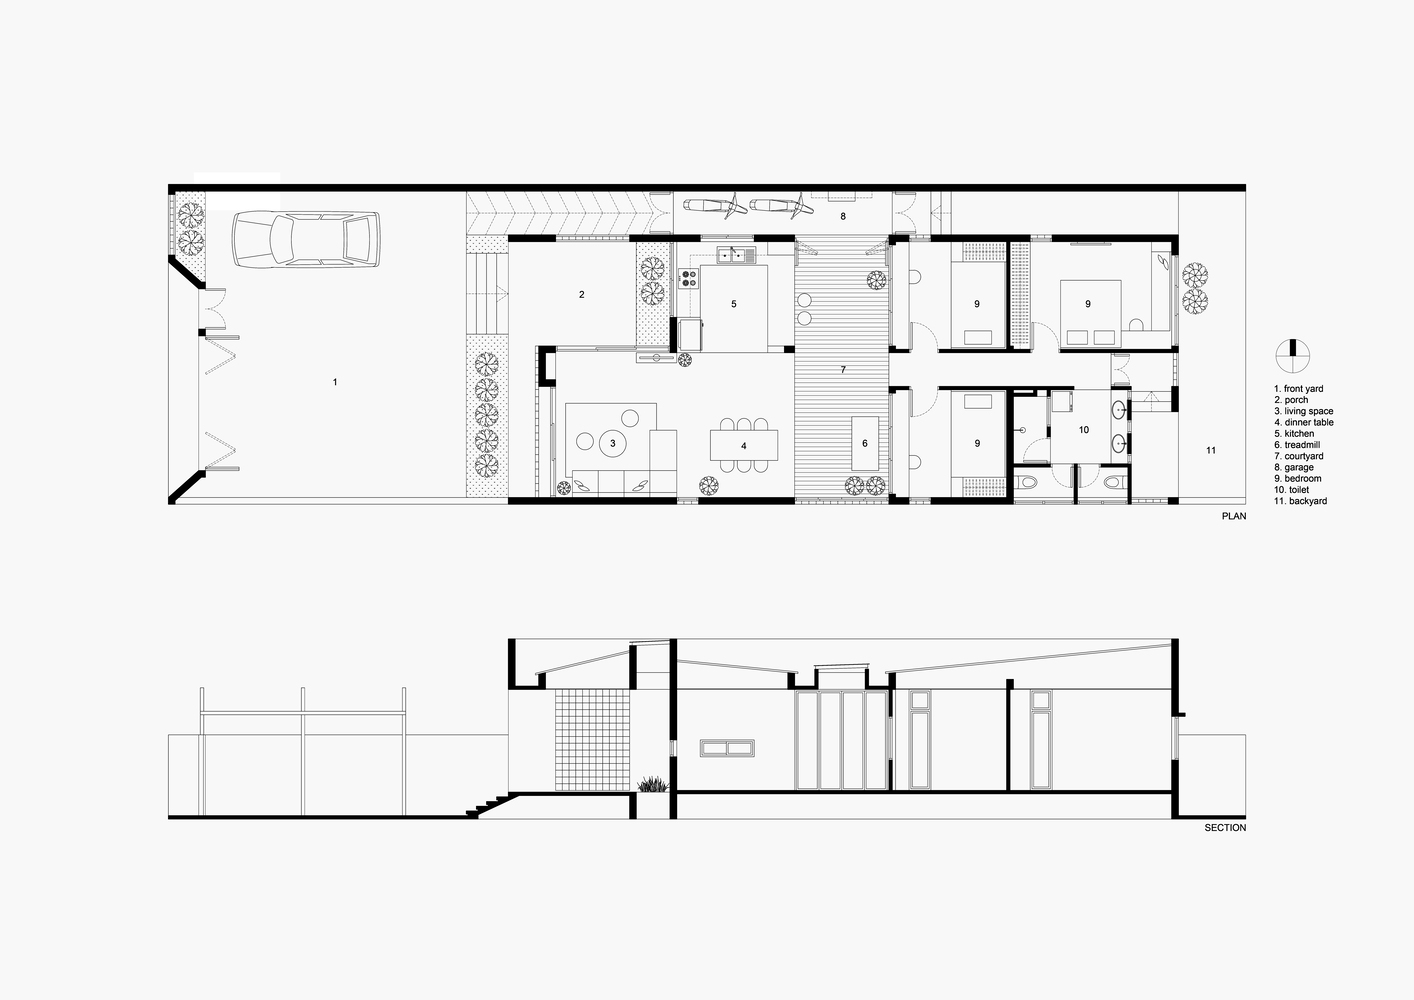 Sơ đồ thiết kế công trình Small House 02 do nhóm thiết kế cung cấp.